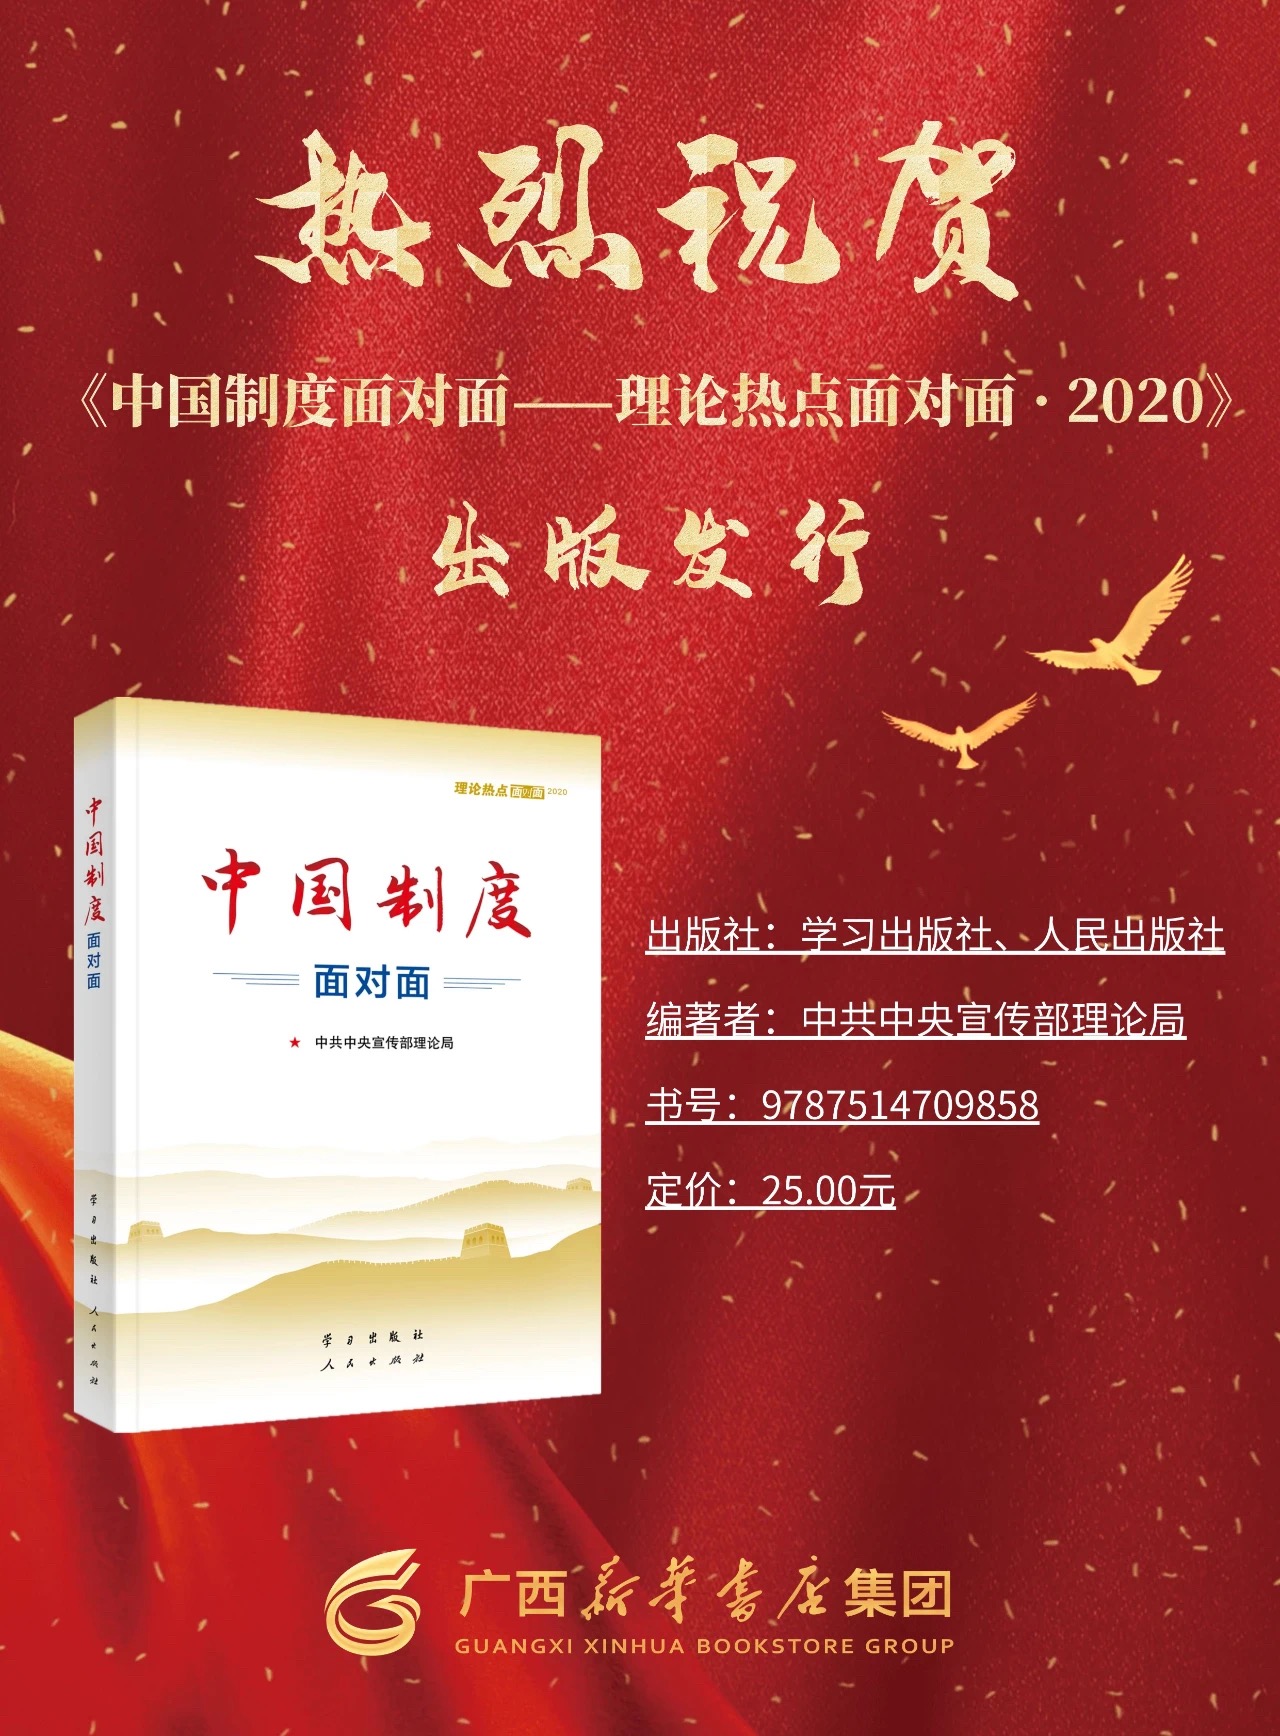 热烈祝贺《中国制度面对面》出版发行！